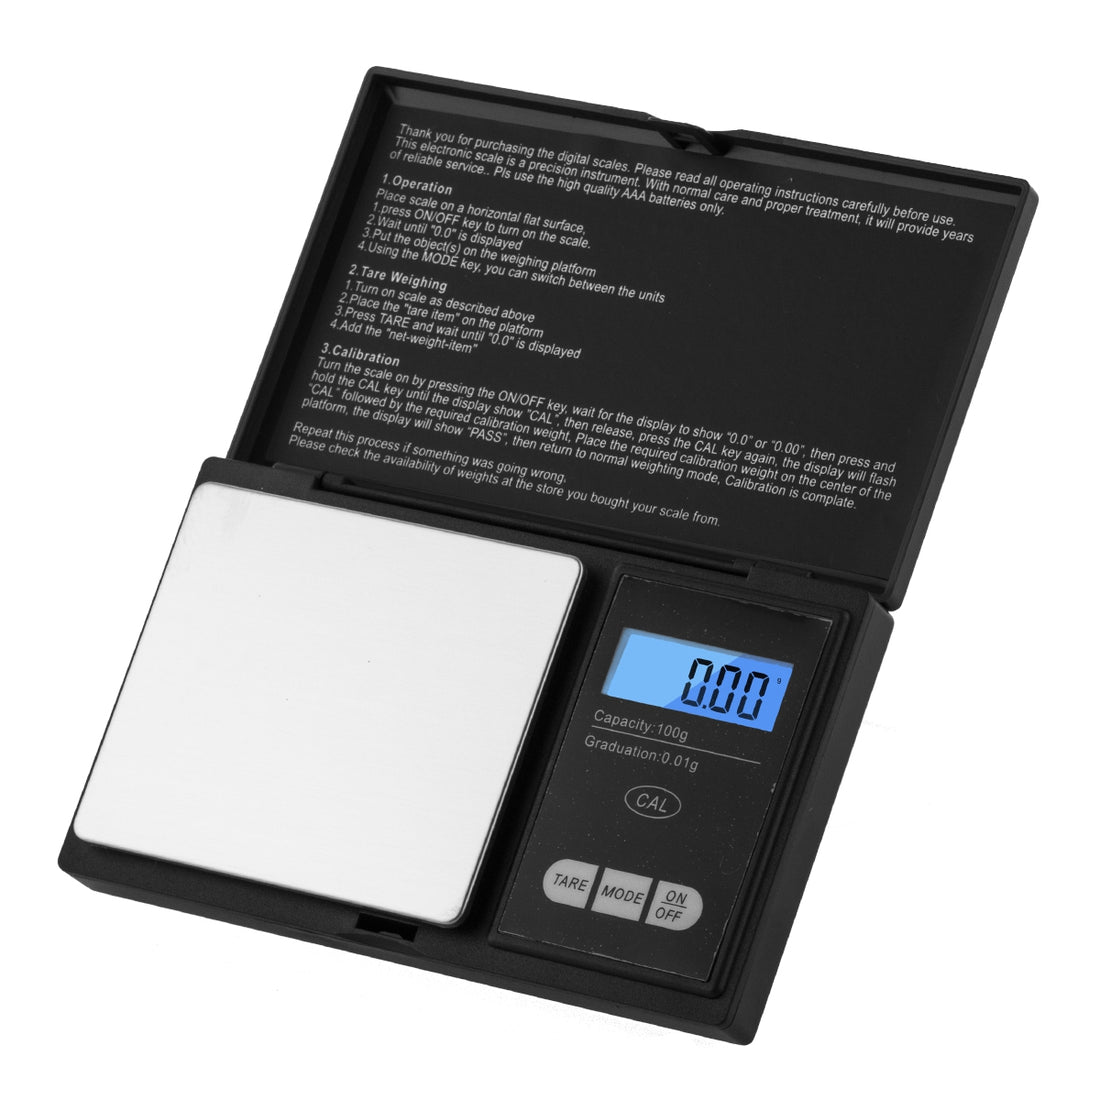 USA Weight Atlanta digitale Waage 100g 